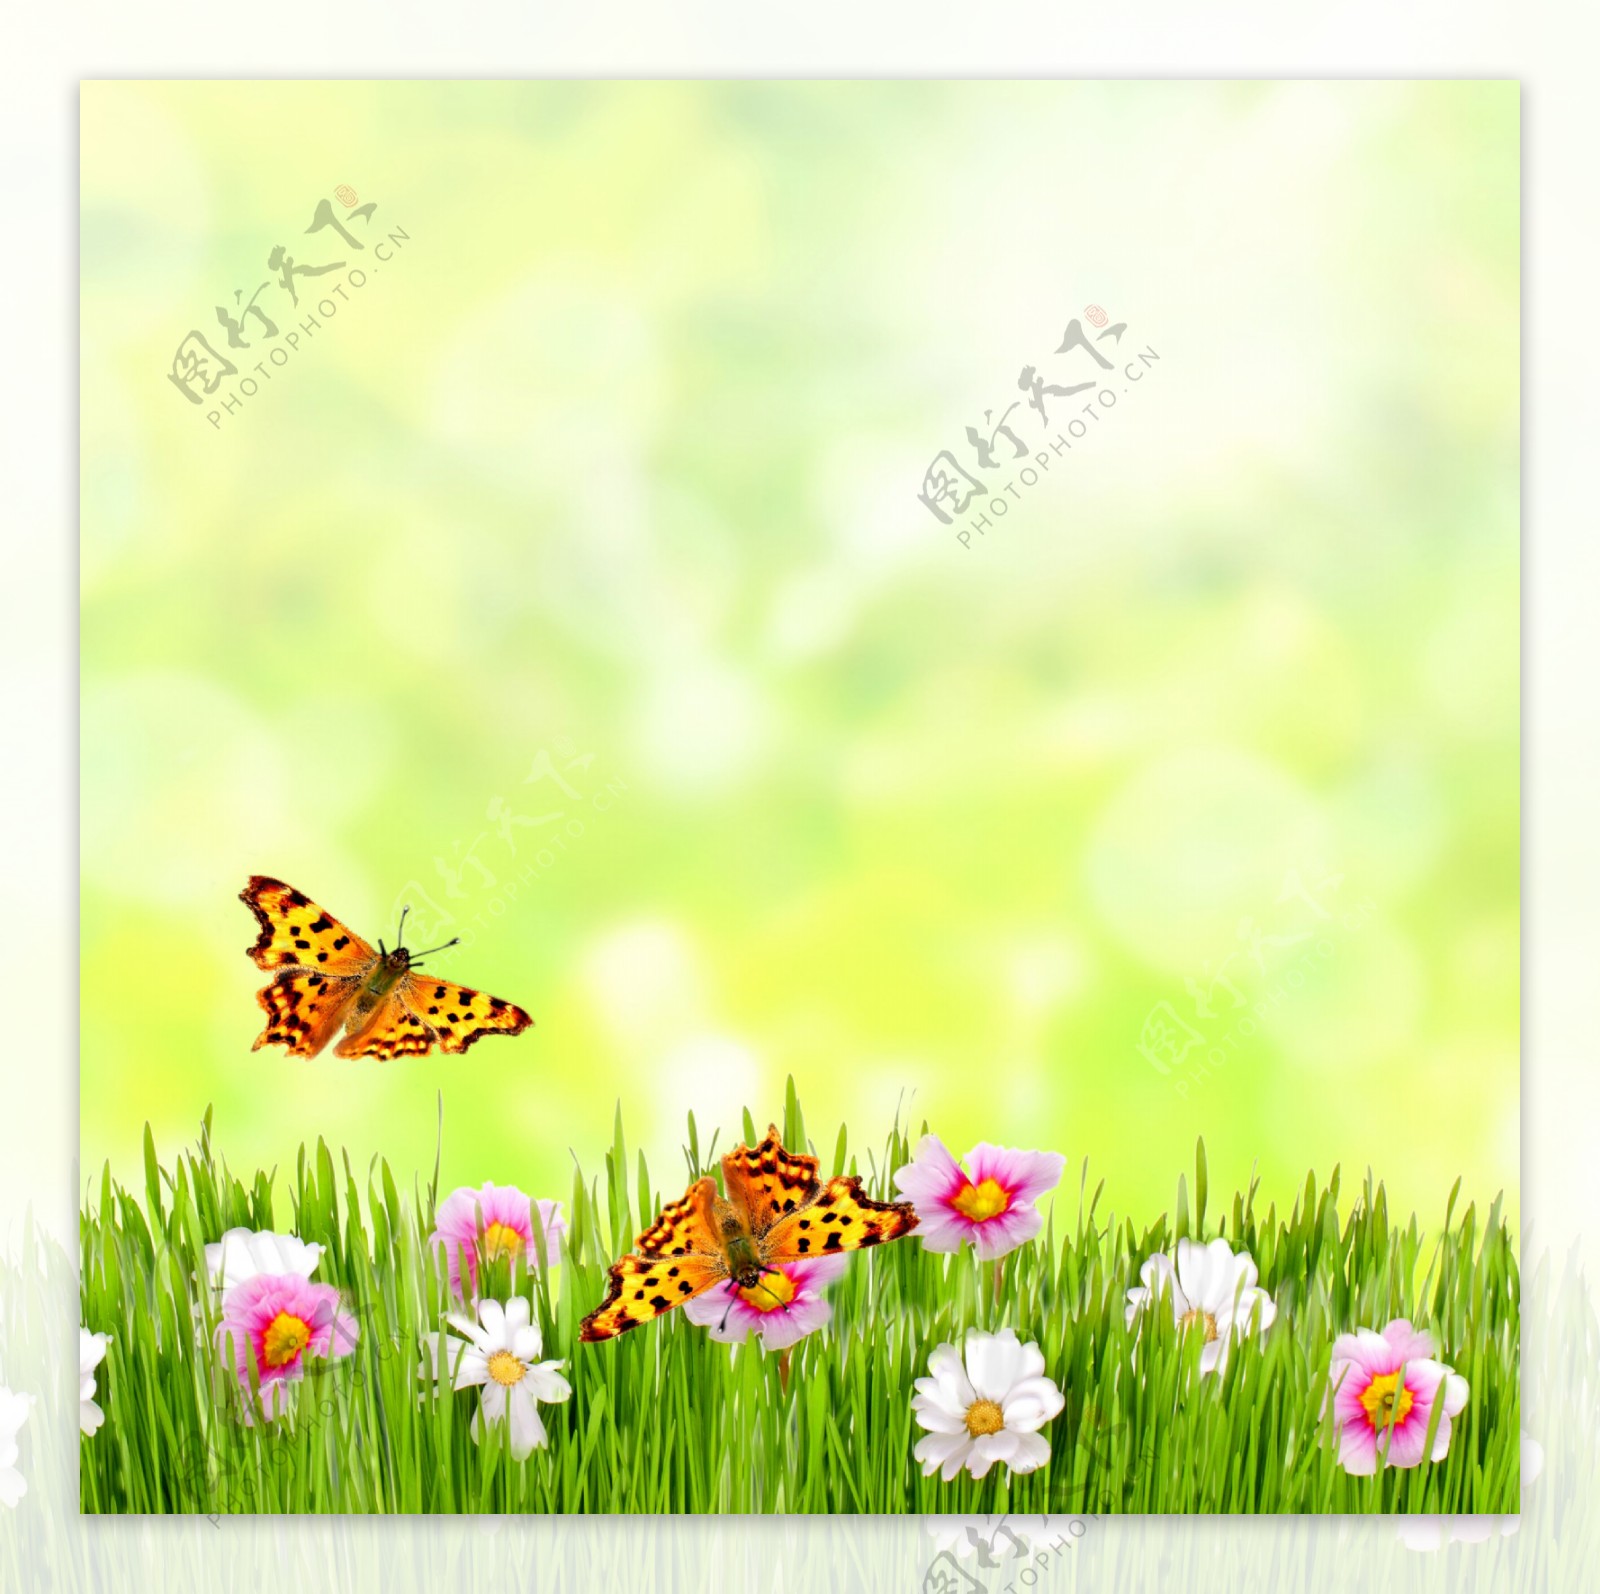 蝴蝶与鲜花草地背景图片